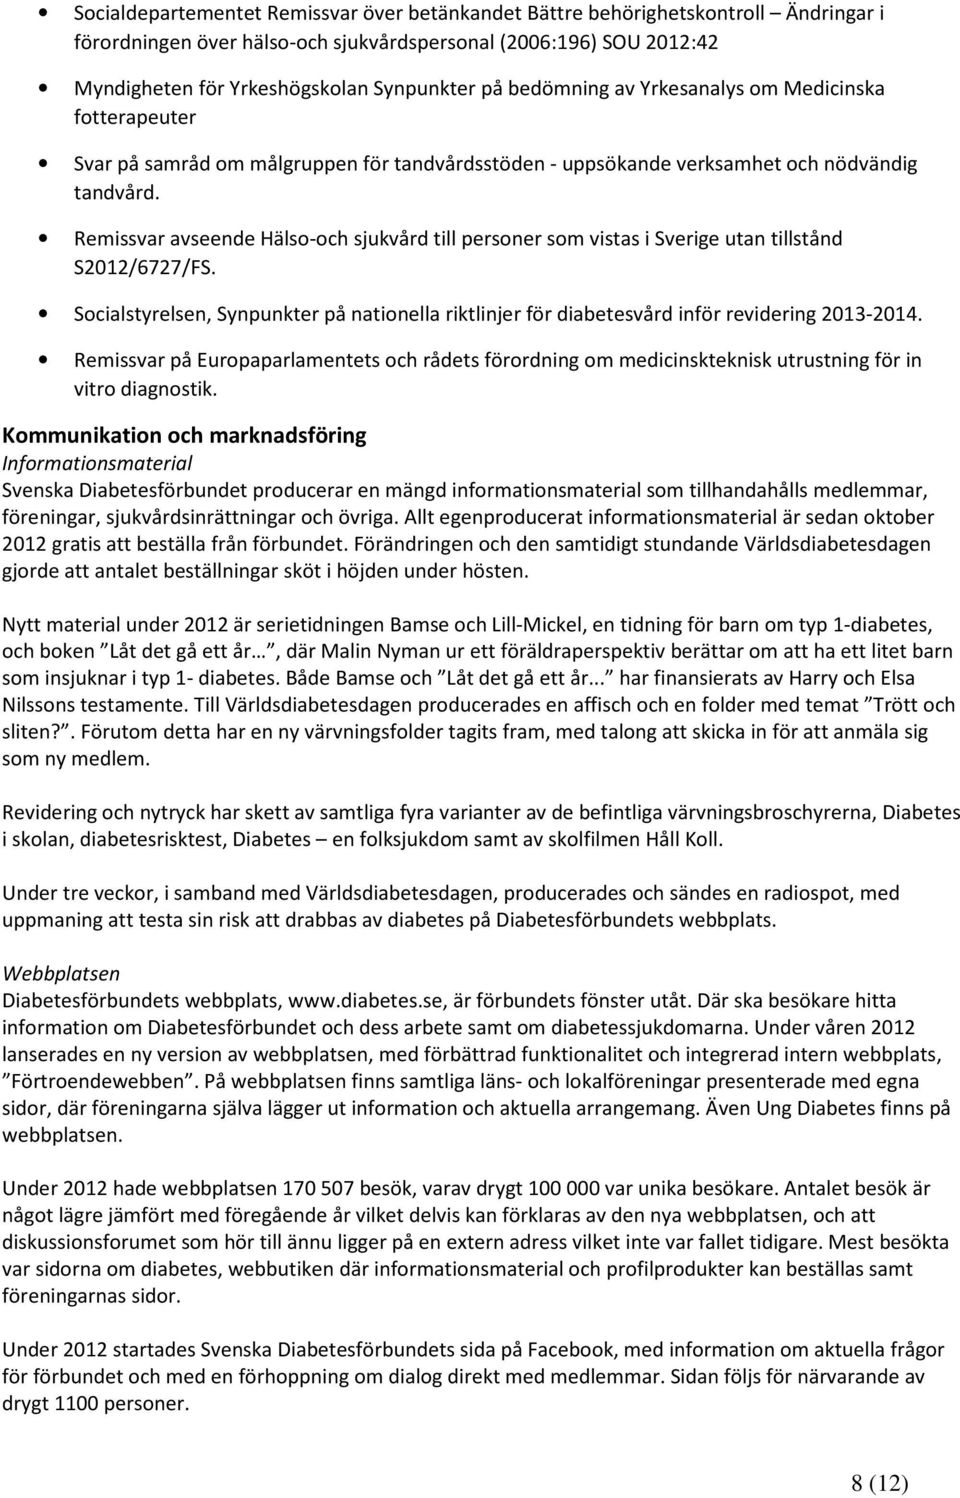 Remissvar avseende Hälso-och sjukvård till personer som vistas i Sverige utan tillstånd S2012/6727/FS. Socialstyrelsen, Synpunkter på nationella riktlinjer för diabetesvård inför revidering 2013-2014.